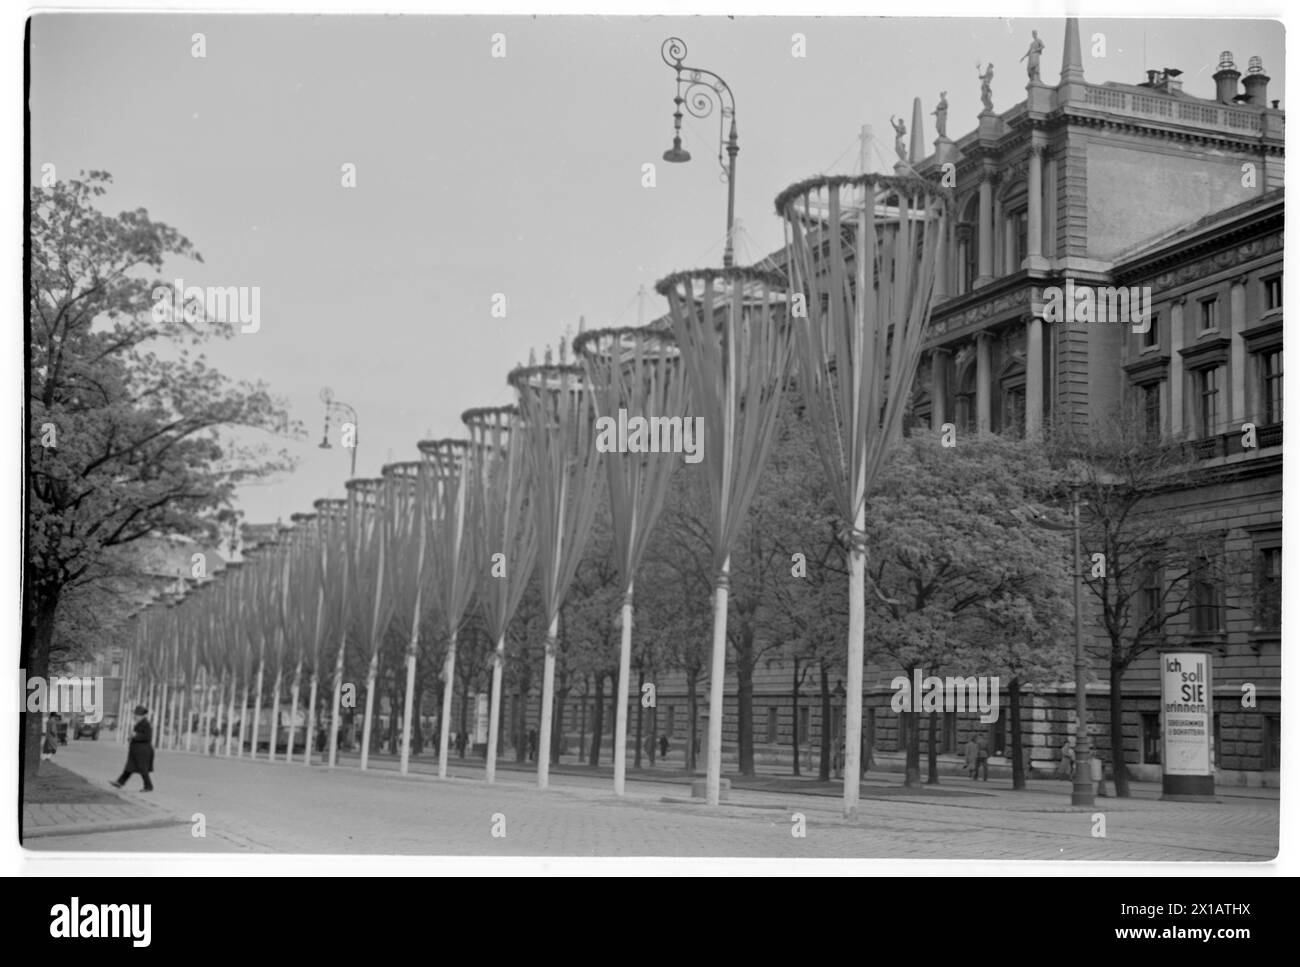 Mai-Tag 1938 in Wien, Blick auf die mit zahlreichen Maypolen geschmückte Ringstraße an der Universität, 01.05.1938 - 19380501 PD0101 - Rechteinfo: Rights Managed (RM) Stockfoto